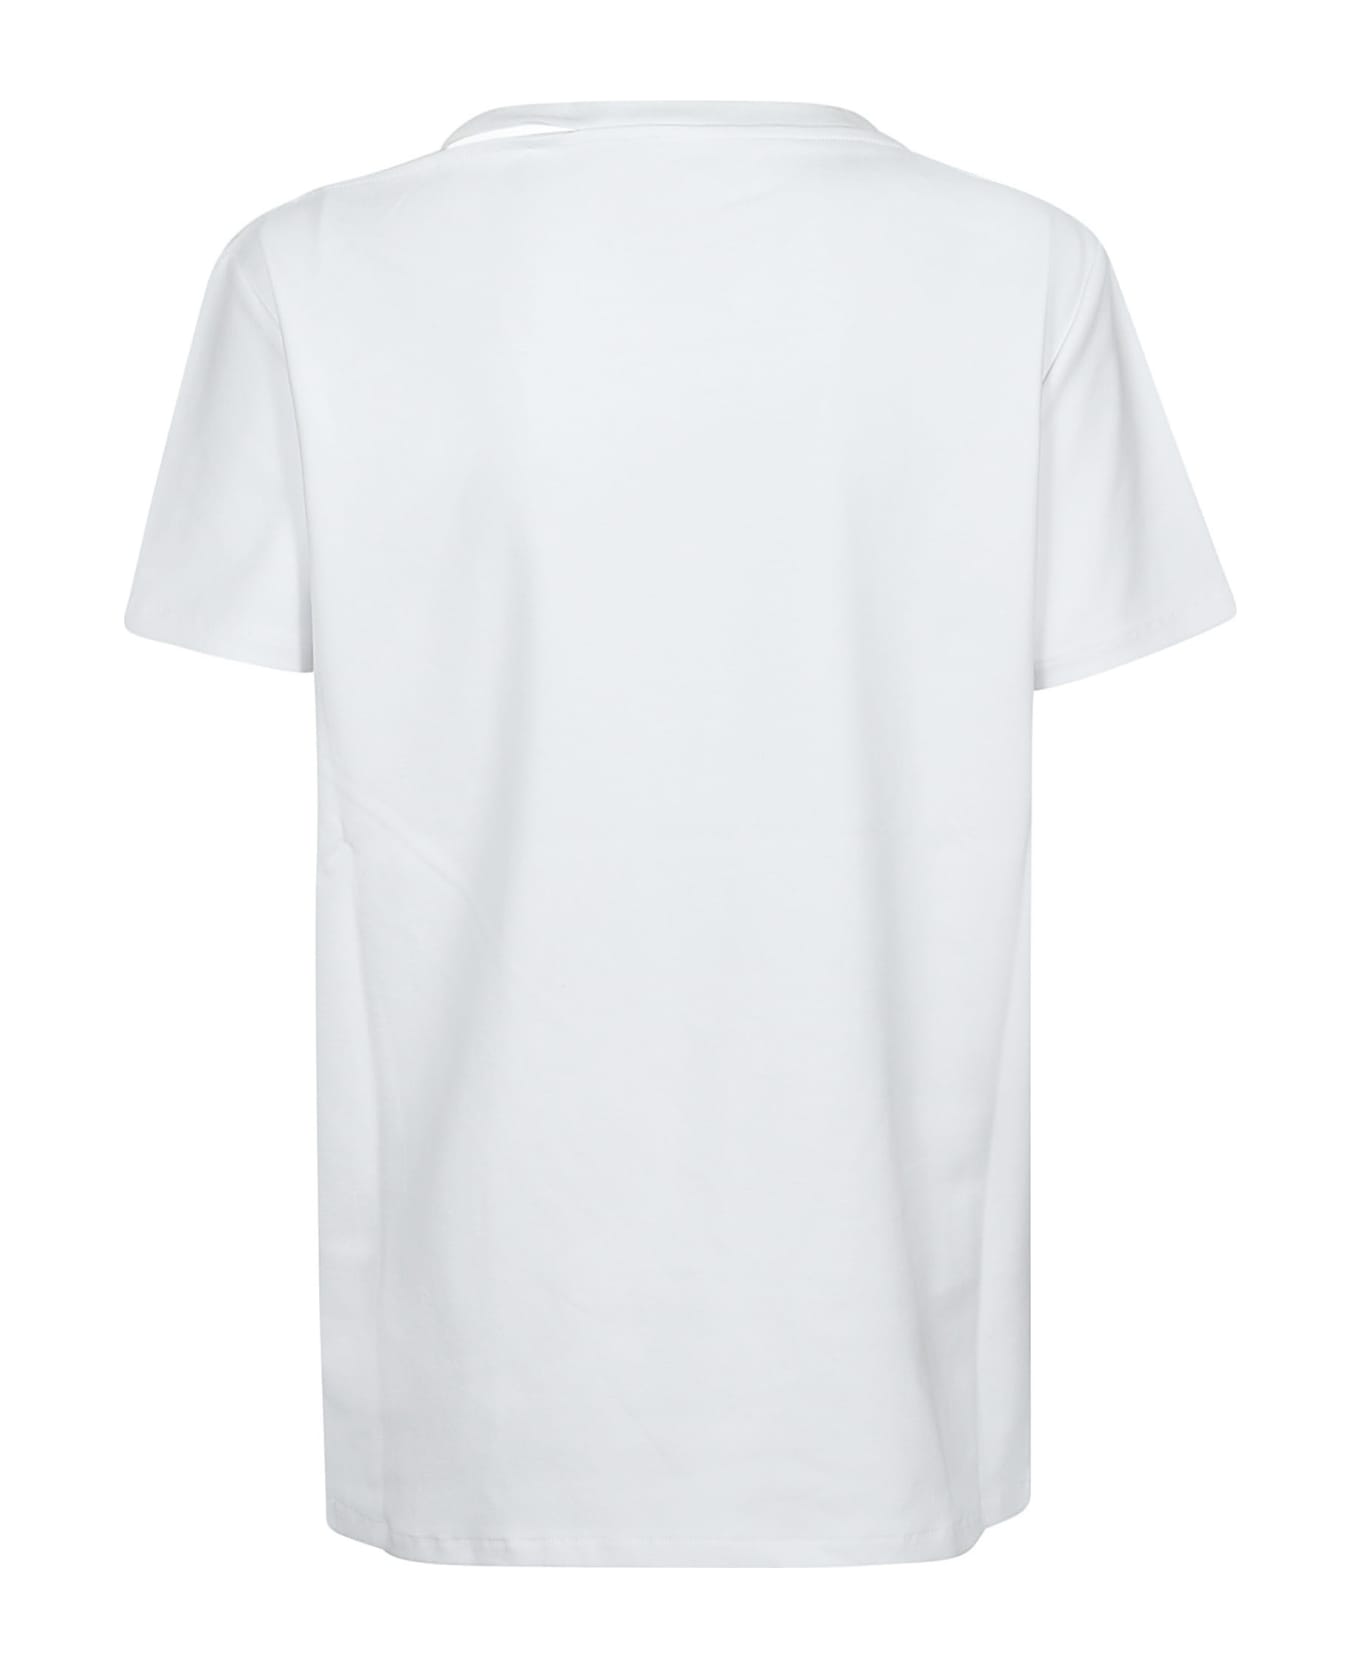 IRO Auranie T-shirt - White Tシャツ